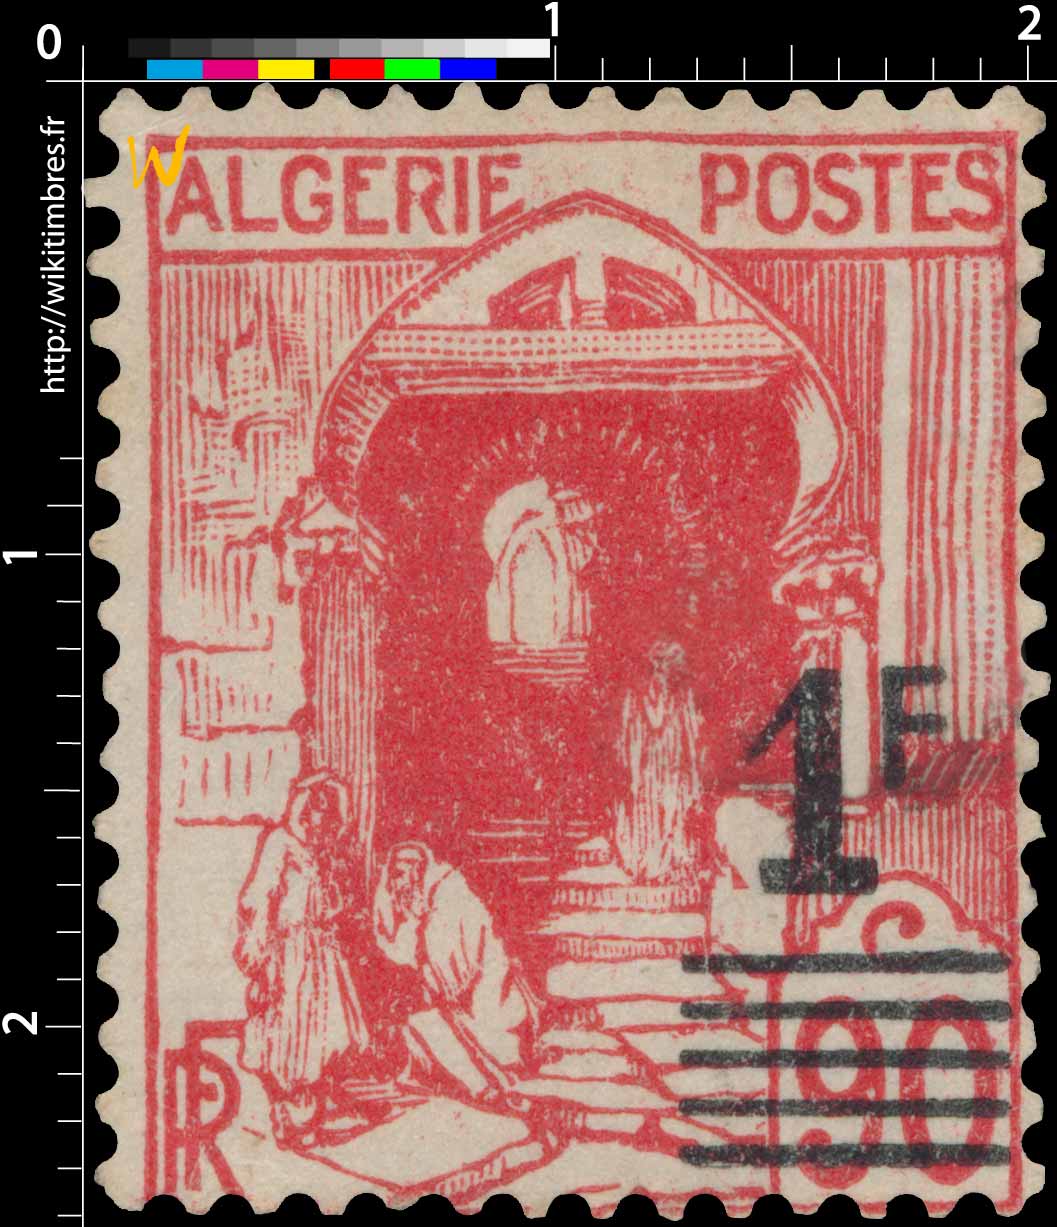 Algérie - Rue de la casbah